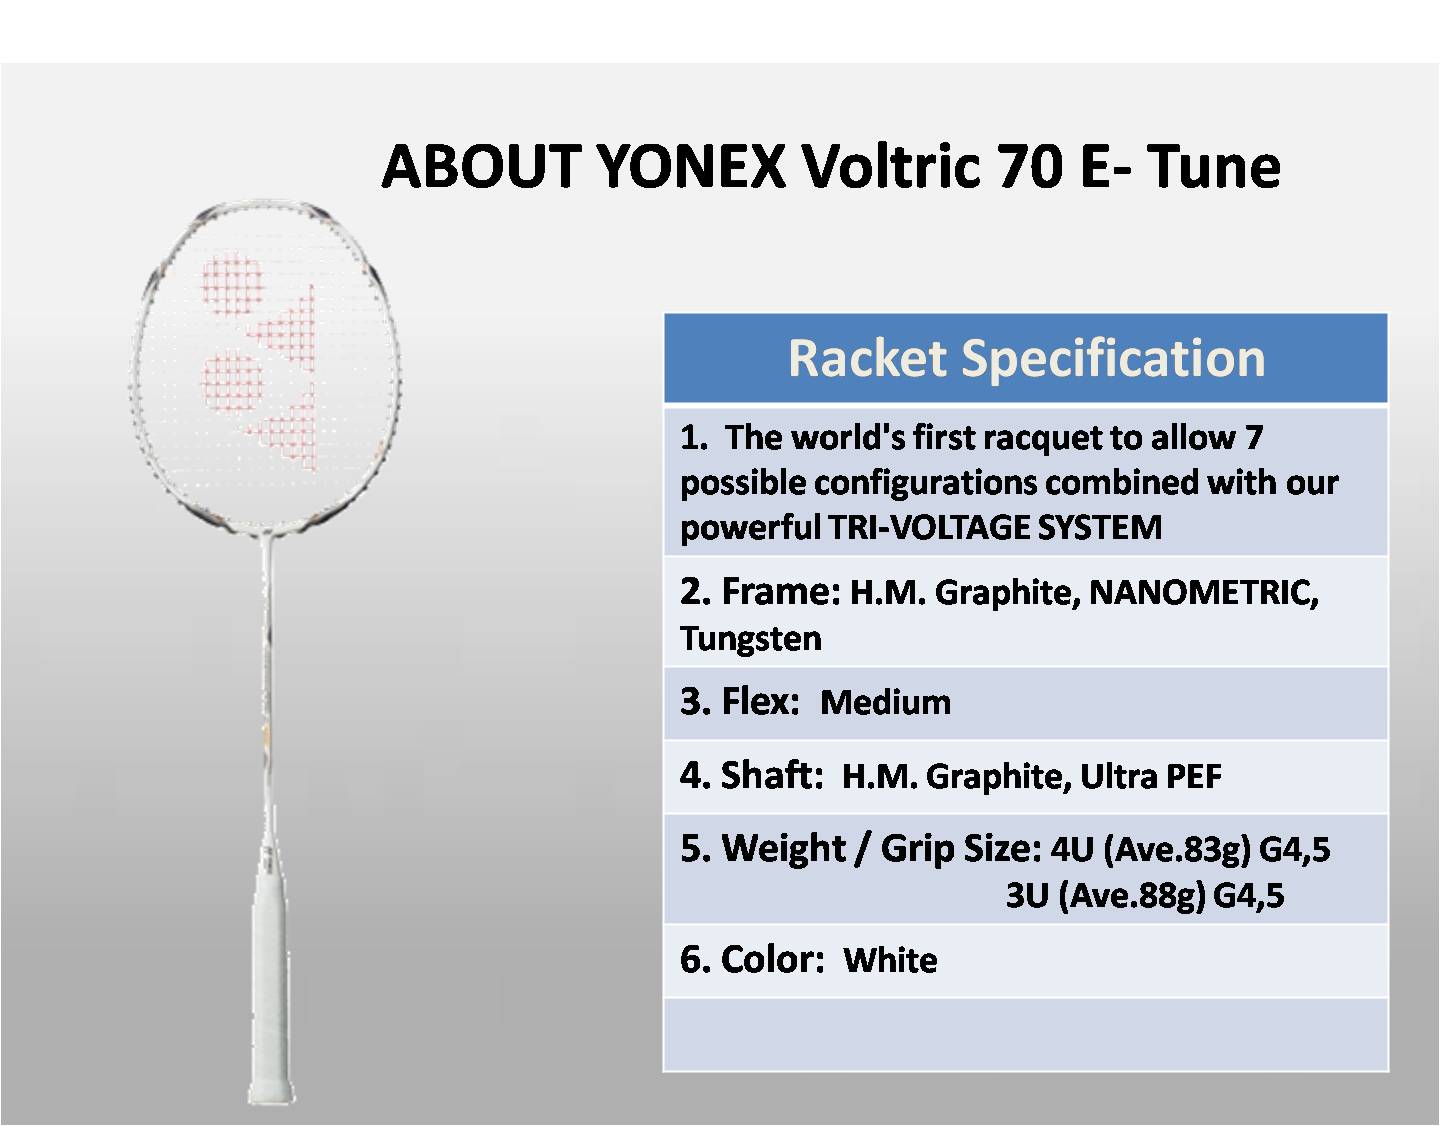 NEW AND INNOVATIVE YONEX VOLTRIC 70 E-TUNE